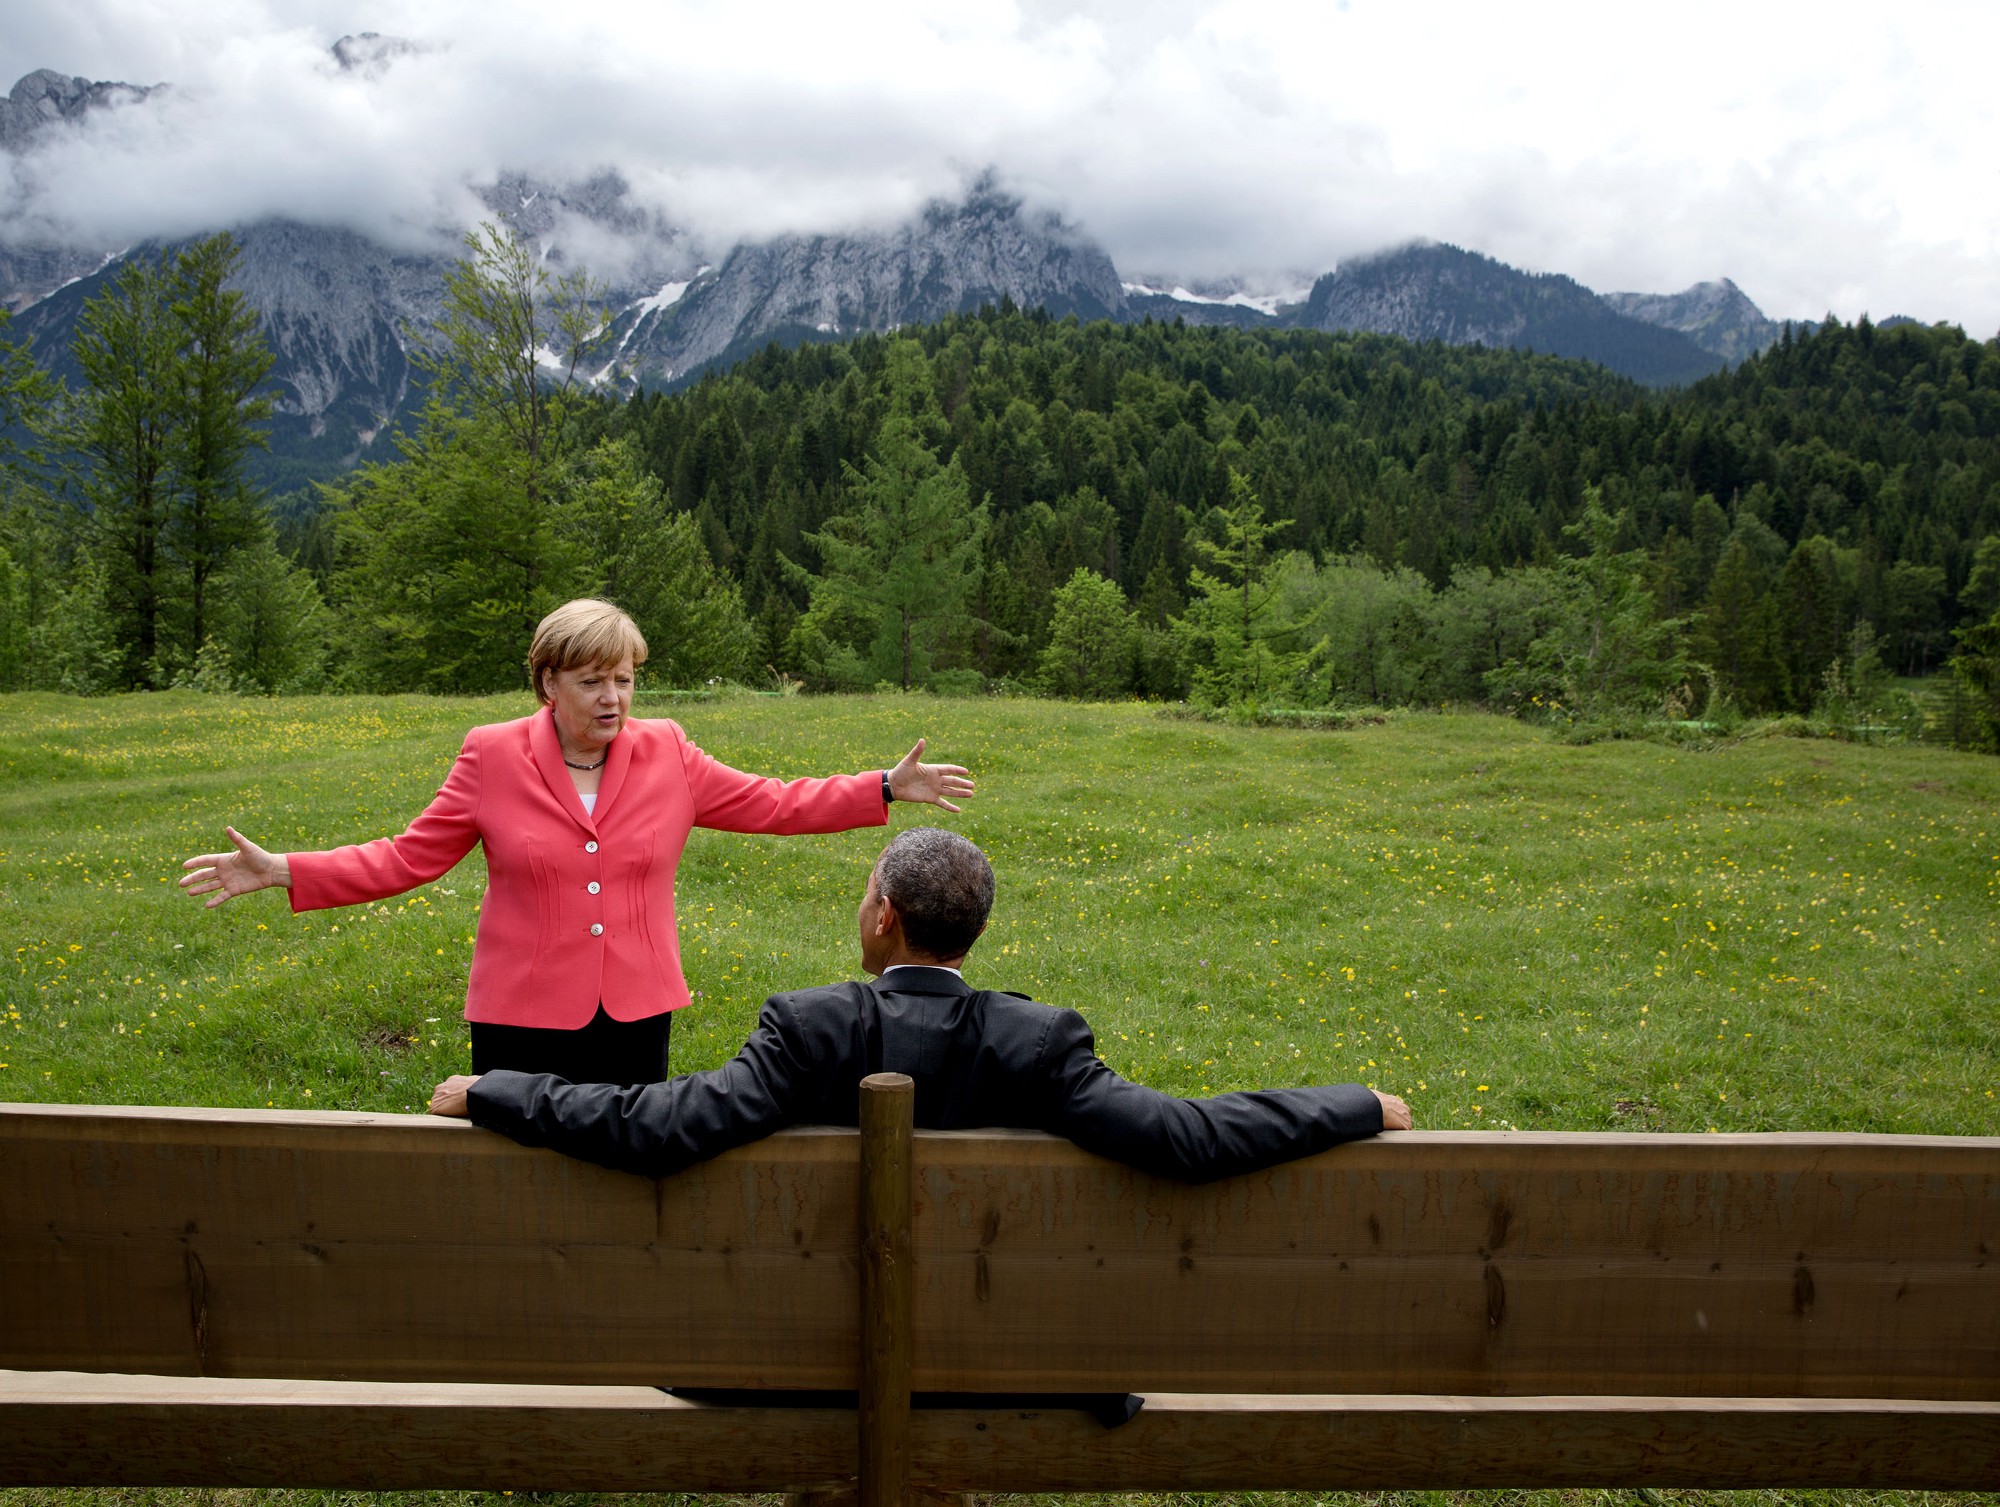 โอบามาสนทนากับอังเกลา แมร์เคิล นายกรัฐมนตรีเยอรมนี ขณะรอผู้นำชาติอื่นๆ ก่อนหน้าการถ่ายภาพหมู่ในการประชุมสุดยอดผู้นำ จี7 ที่เมืองครูน ประเทศเยอรมนีเมื่อ 8 มิถุนายน 2558 / Official White House Photo by Pete Souza 